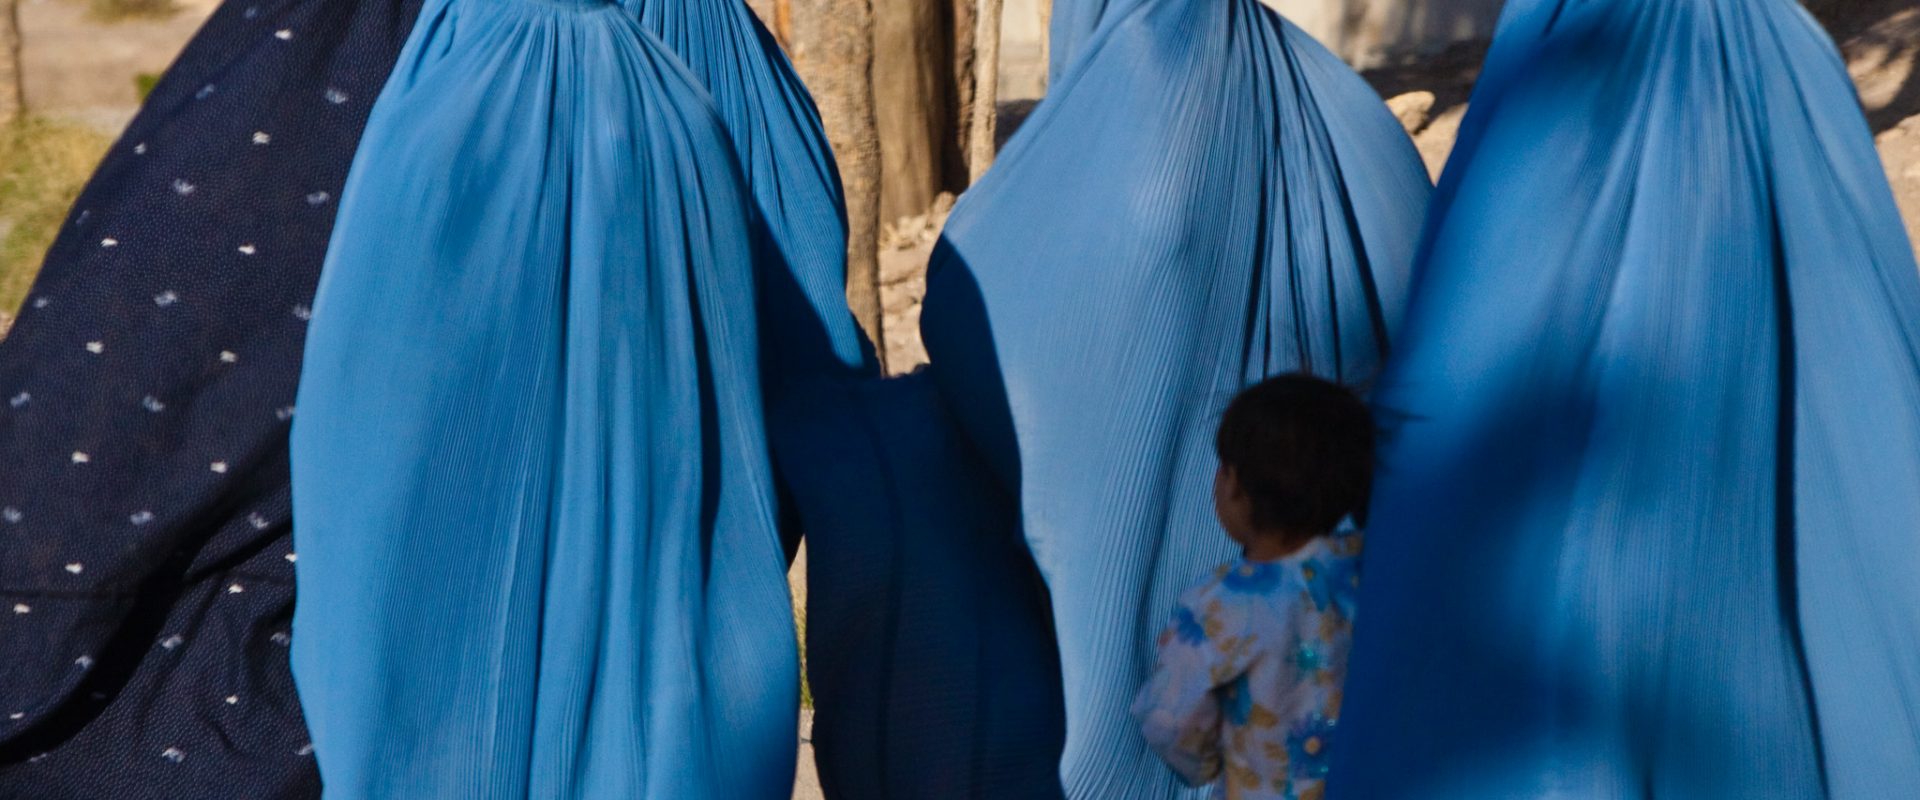 Las mujeres en Afganistán están obligadas a salir cubiertas de pies a cabeza y no viajar sin compañía de parientes varones. Fotografía: Wikimedia Commons